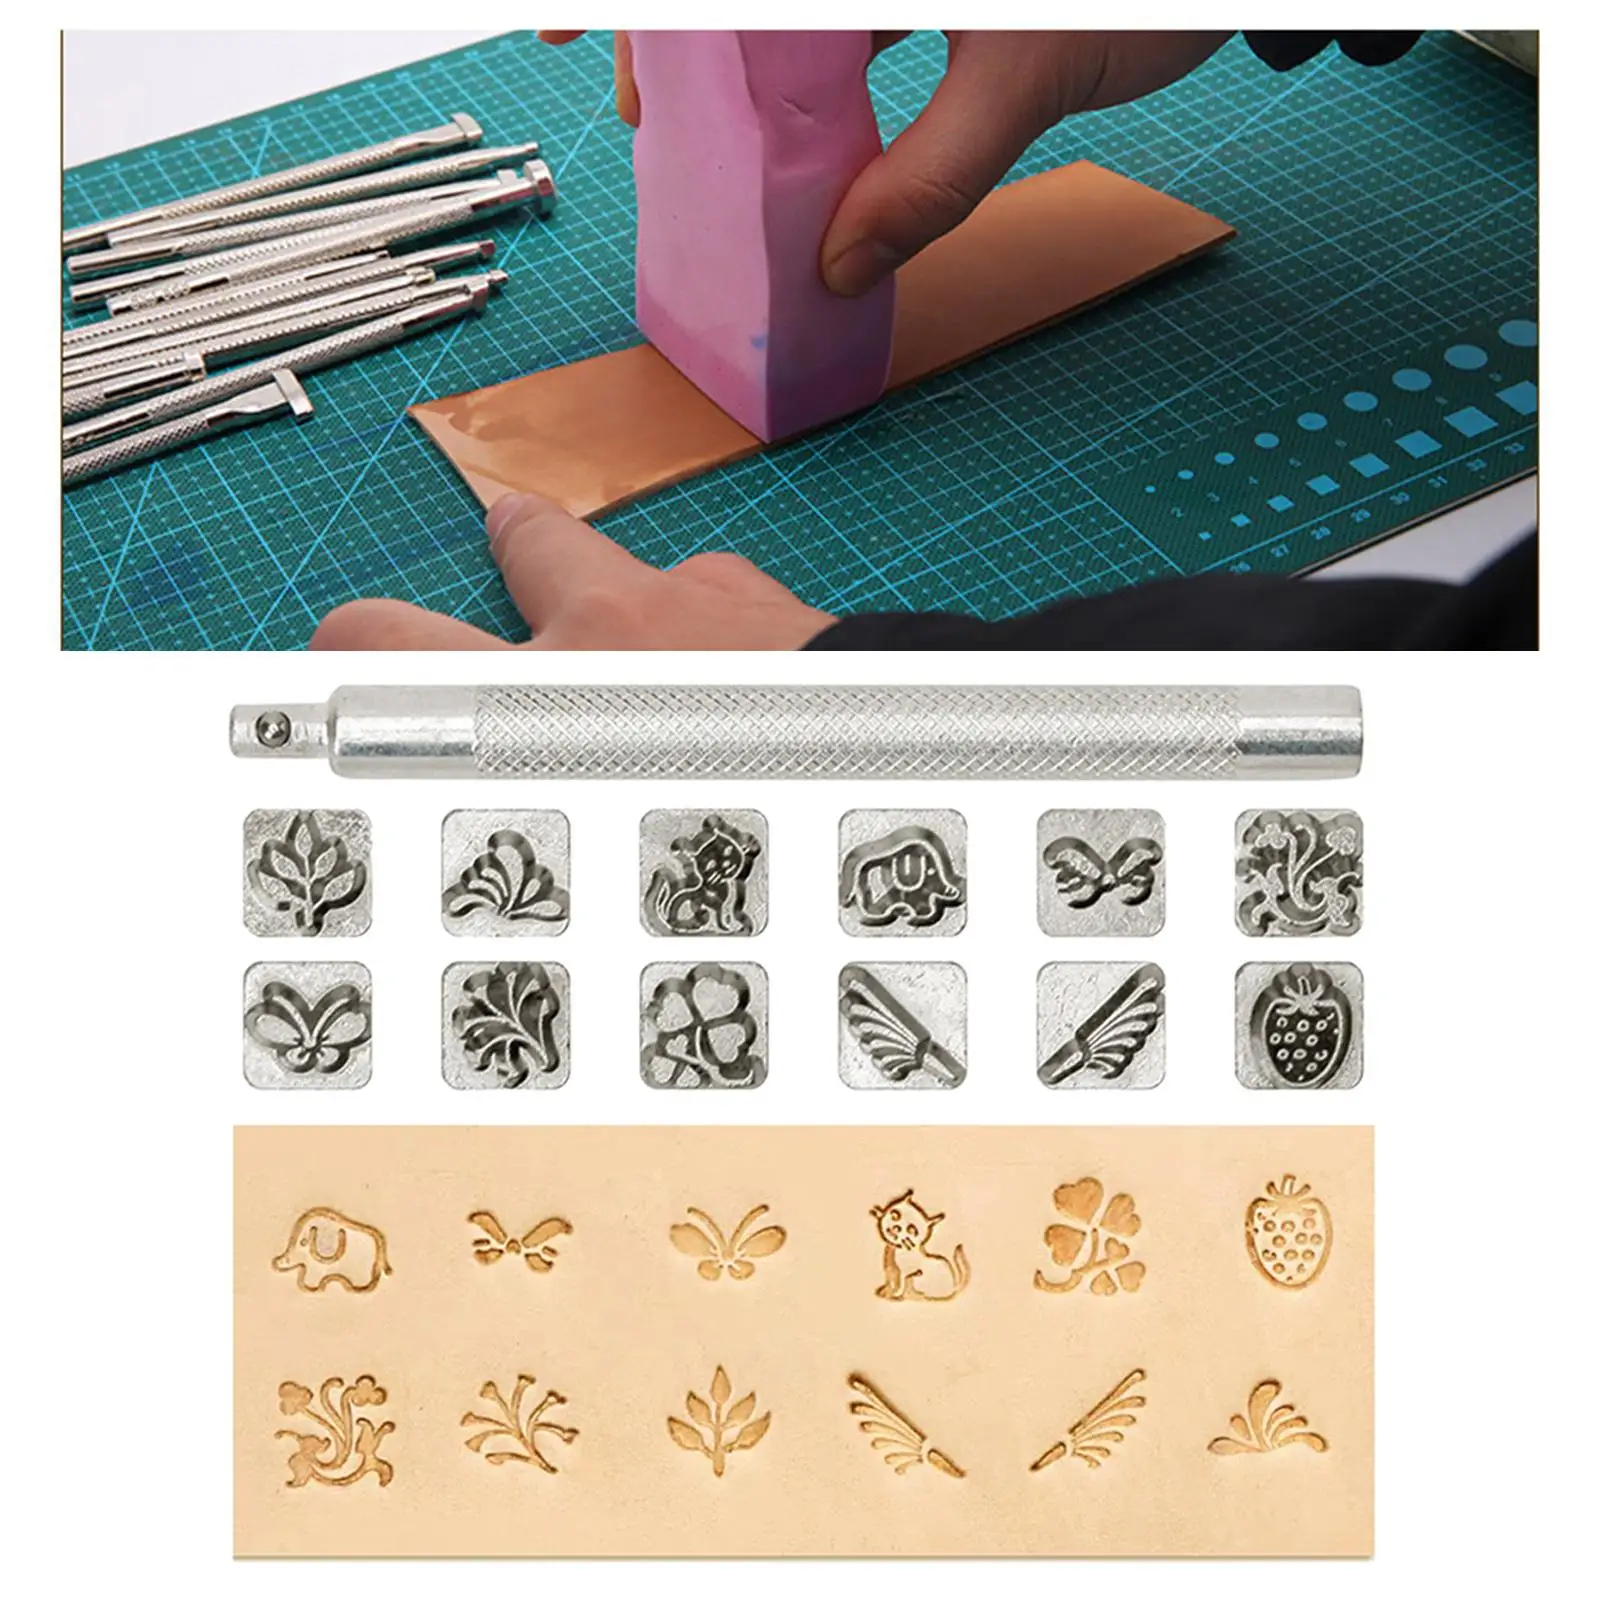 12pcs Leather Craft Working Saddle Making diy Carving Metal Stamps Set